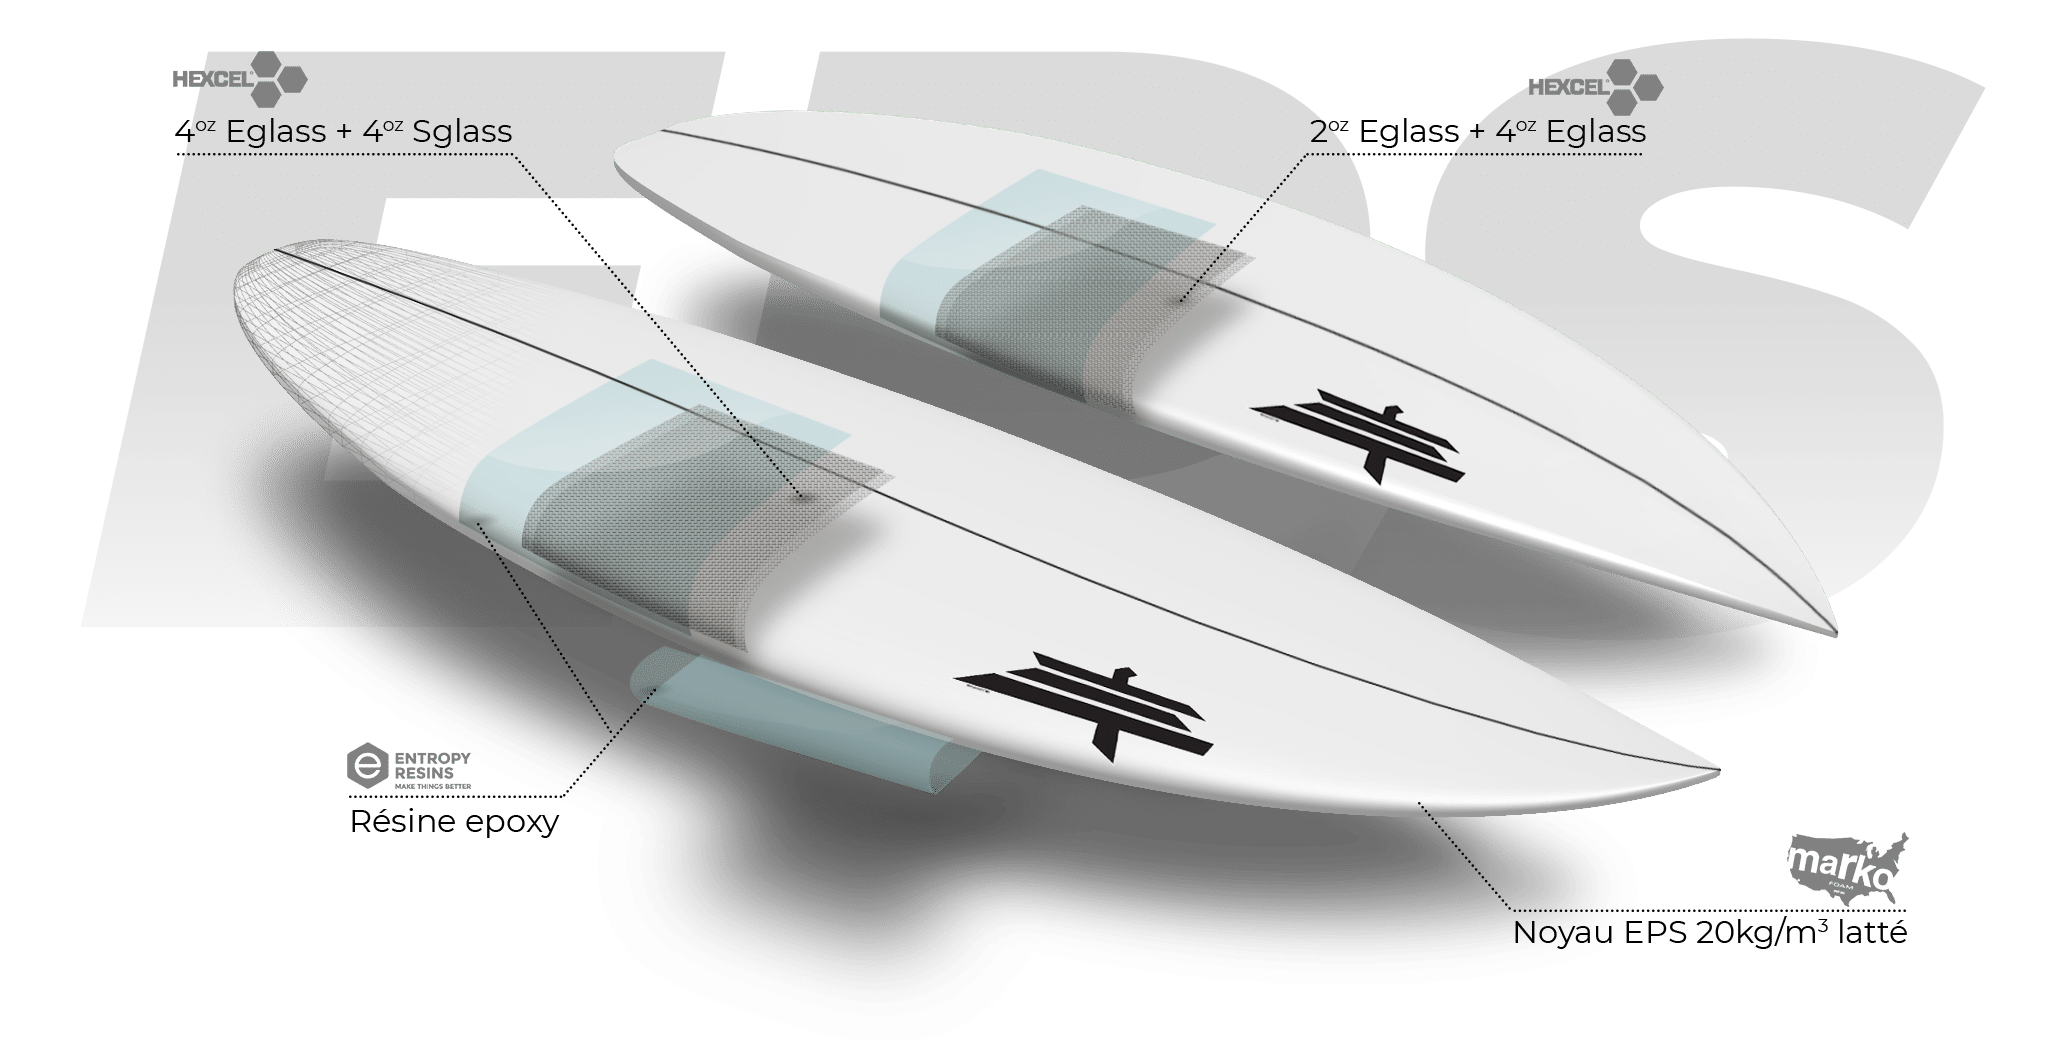 Shapers-Club- Illustration 3D de deux planches de surf avec spécifications techniques de conception, présentant les nouvelles tendances pour 2024. -surfshop-surfboard